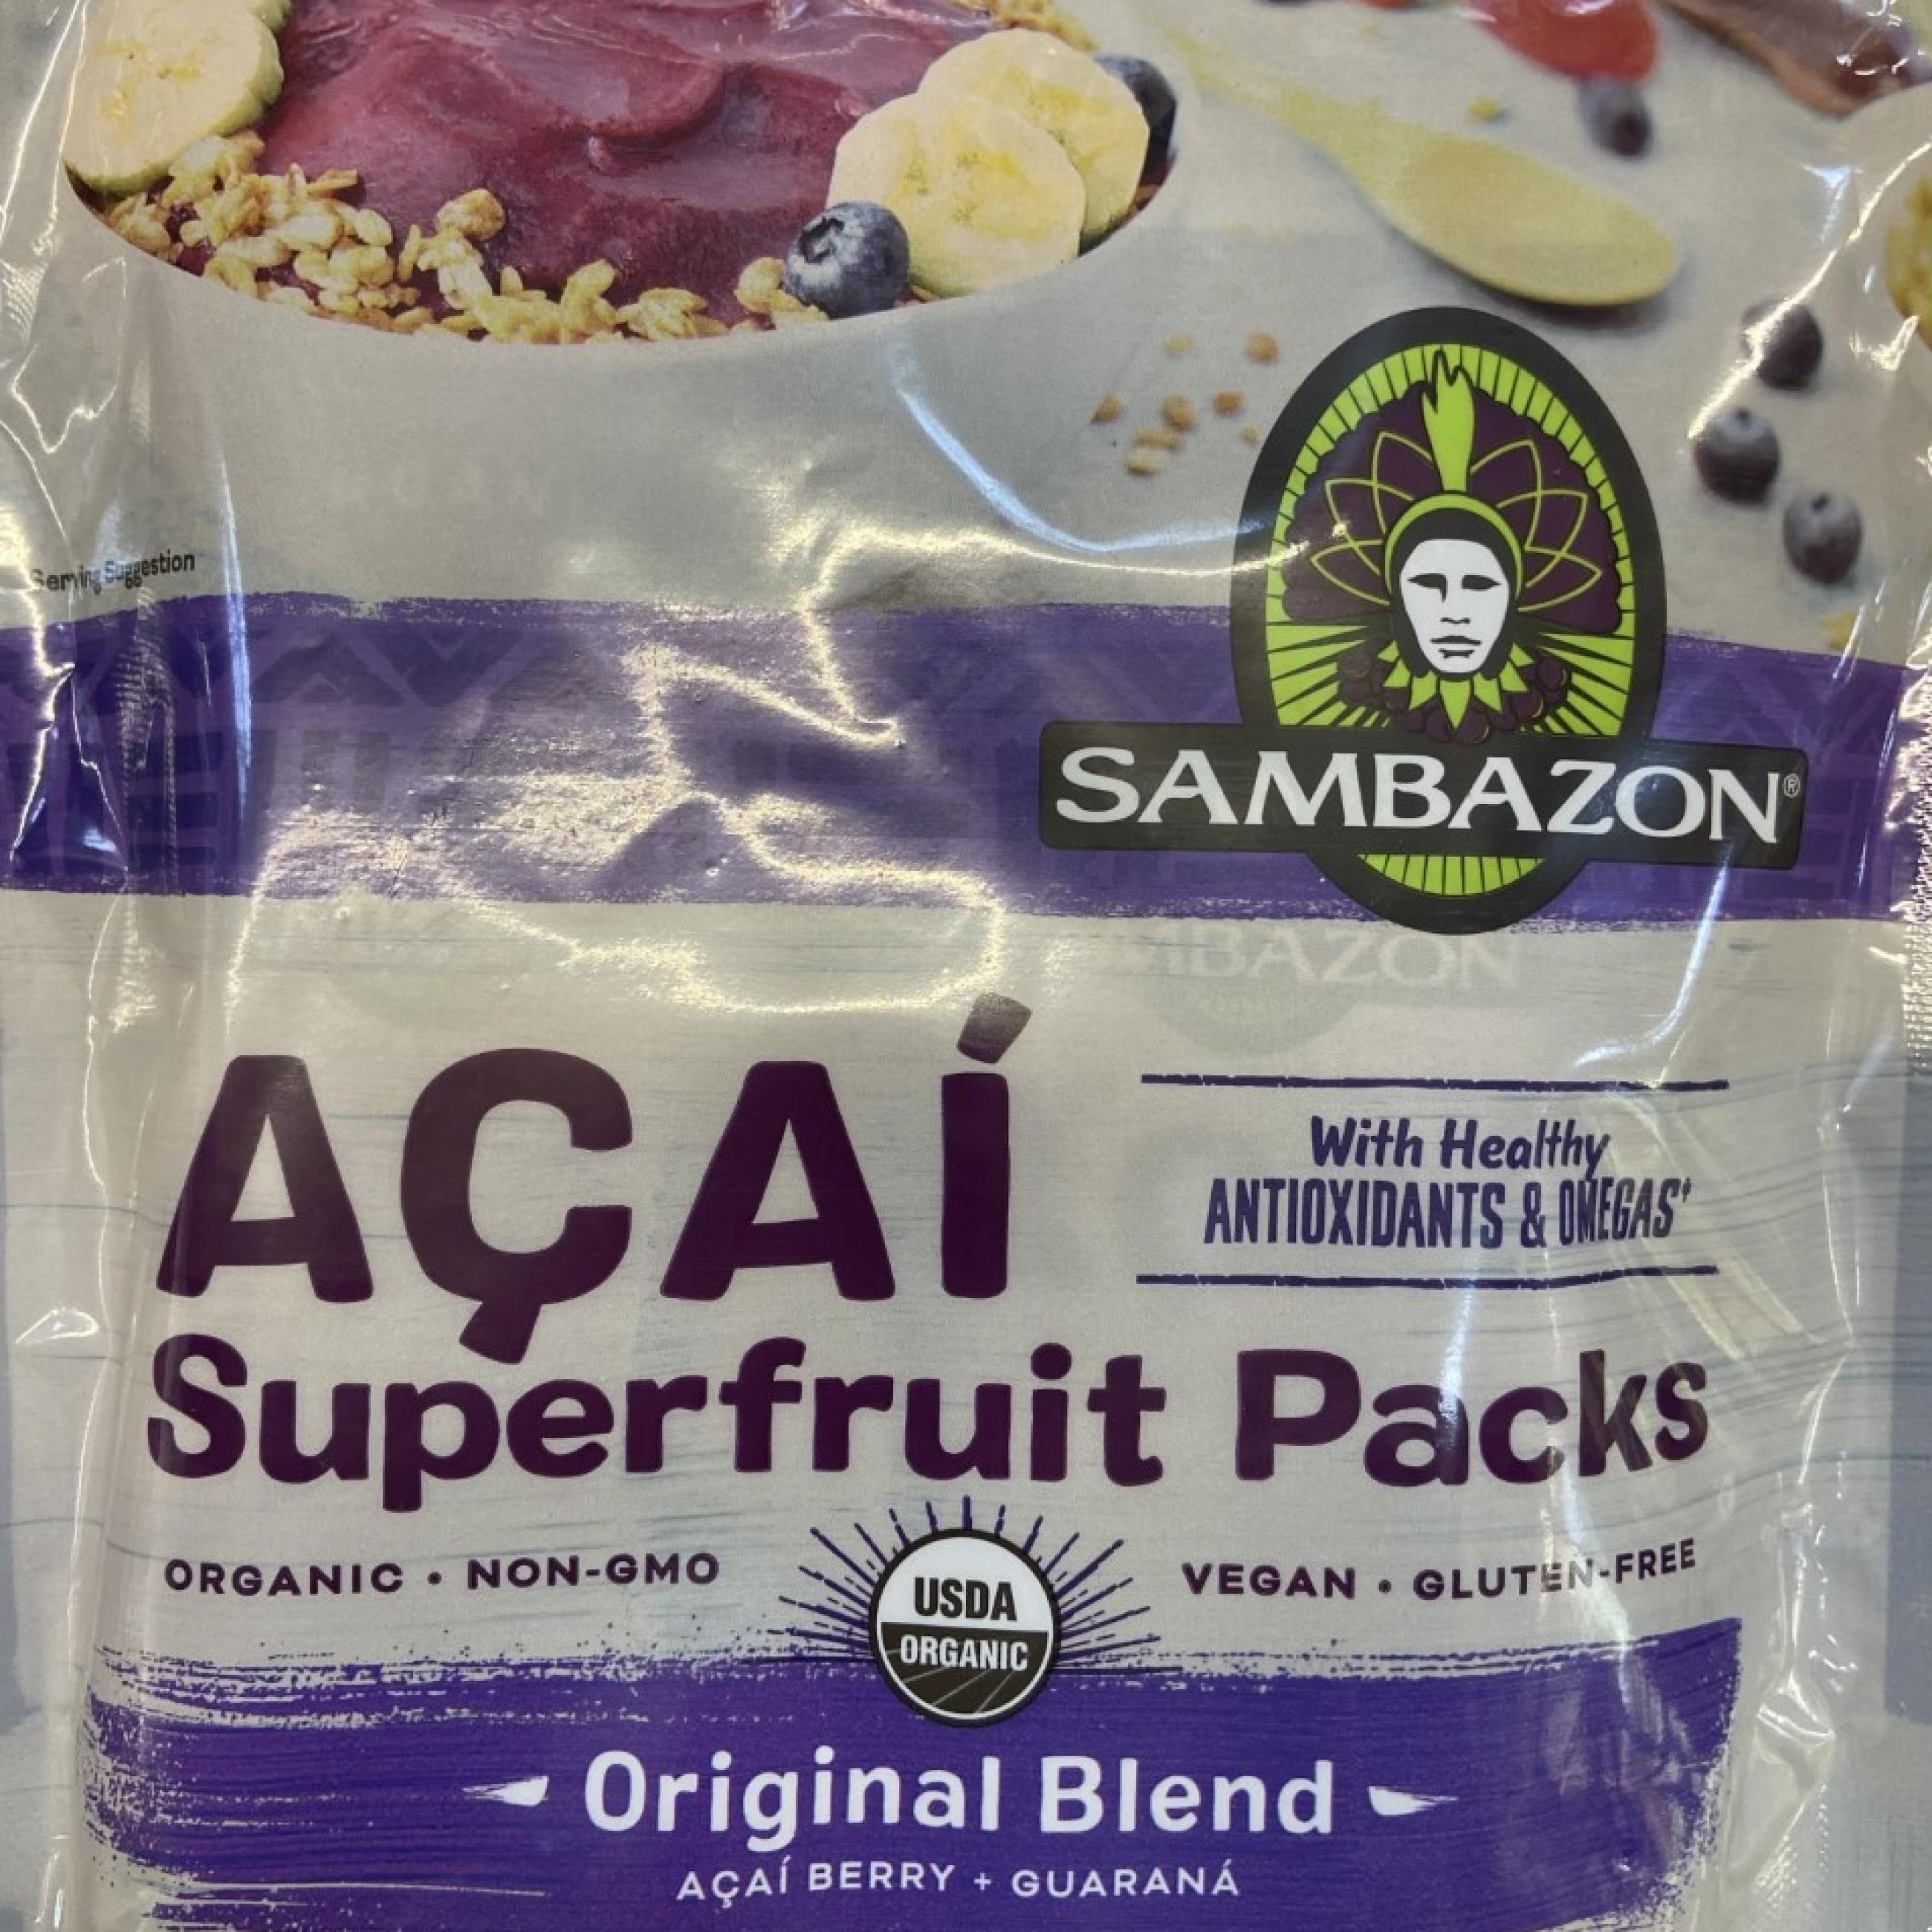 A packet of Sambazon Frozen Açai Packets 